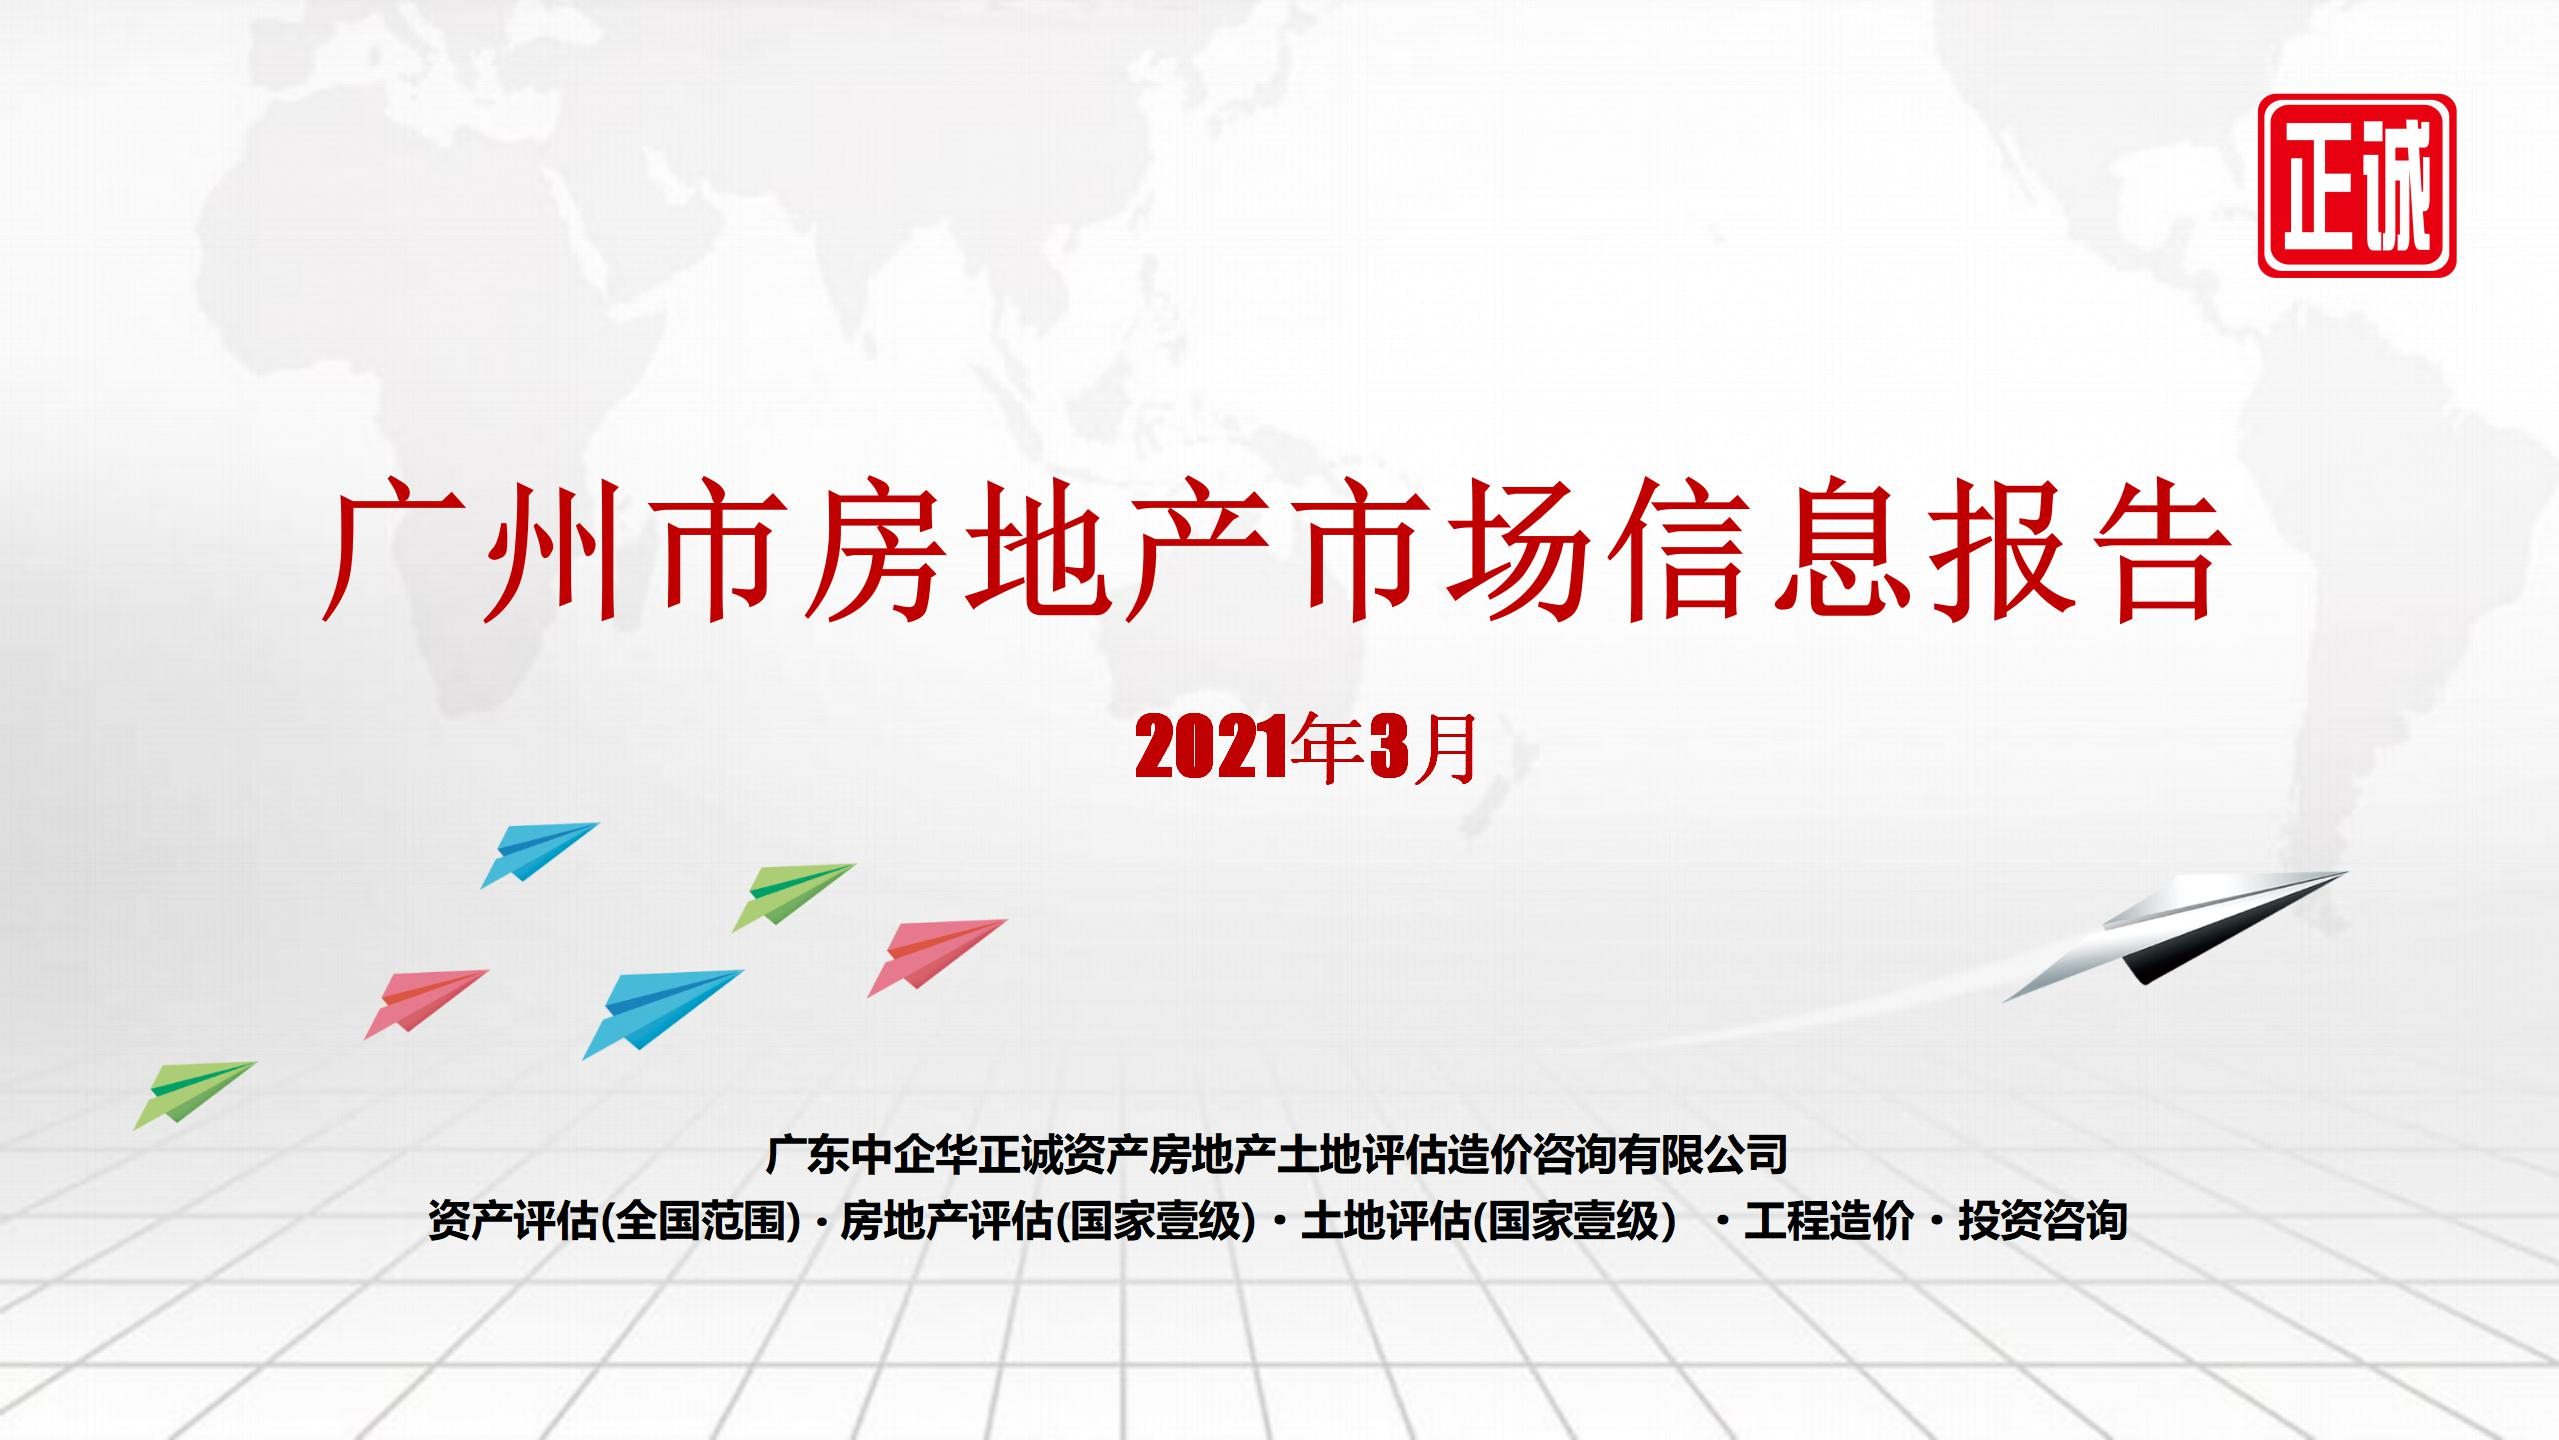 2021年3月广州市房地产市场信息报告